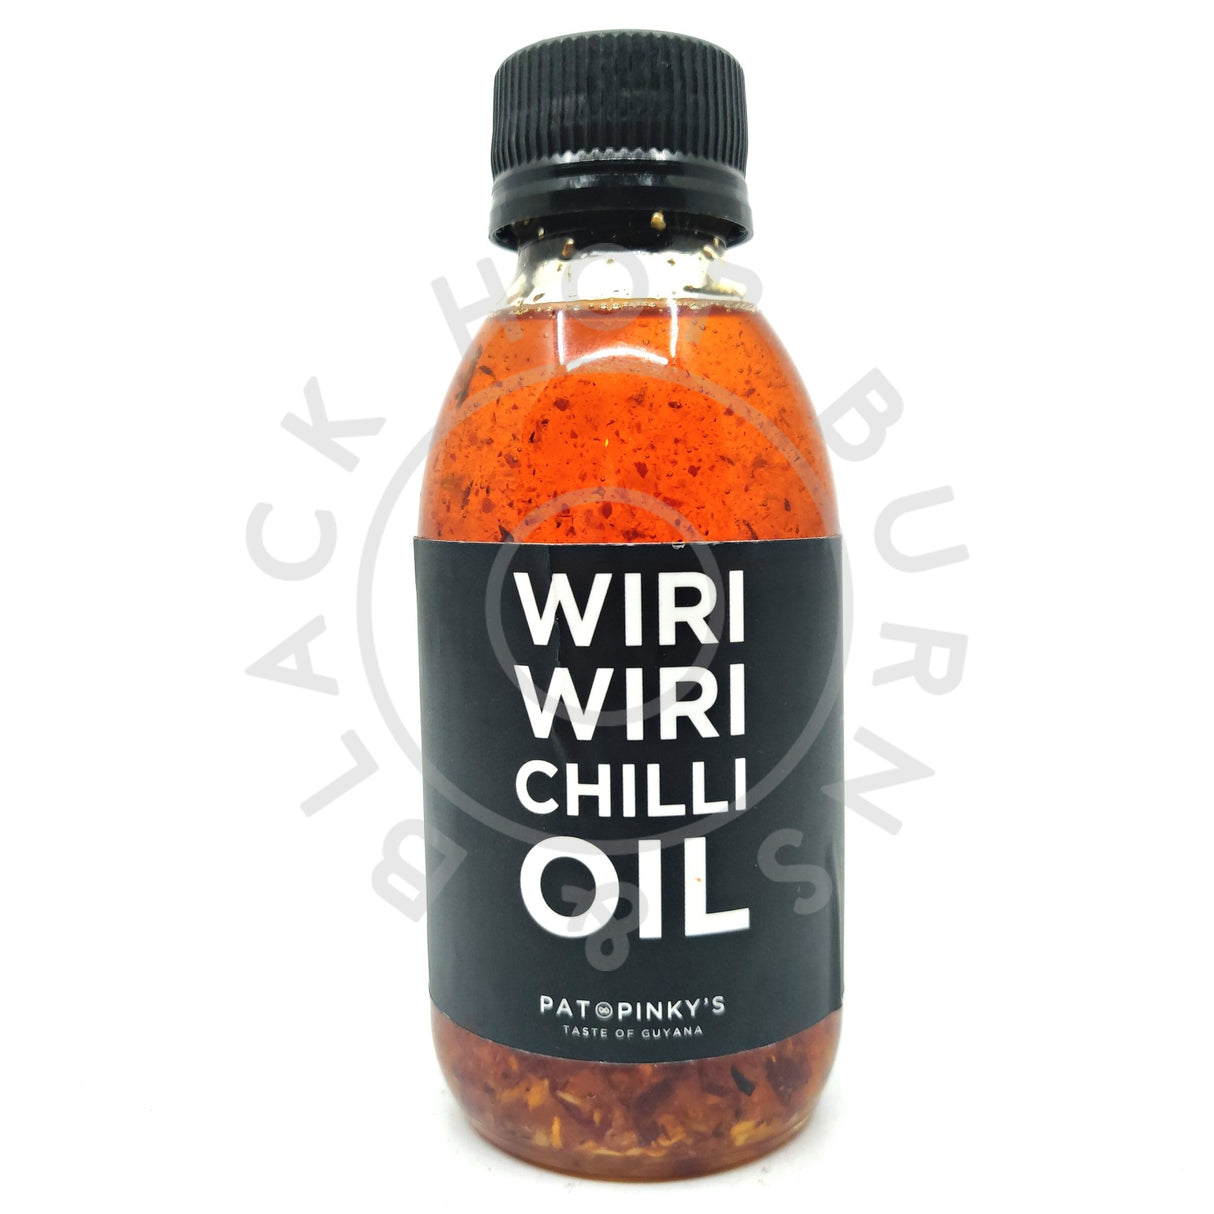 Pat & Pinky's Wiri Wiri Chilli Oil (200ml)-Hop Burns & Black